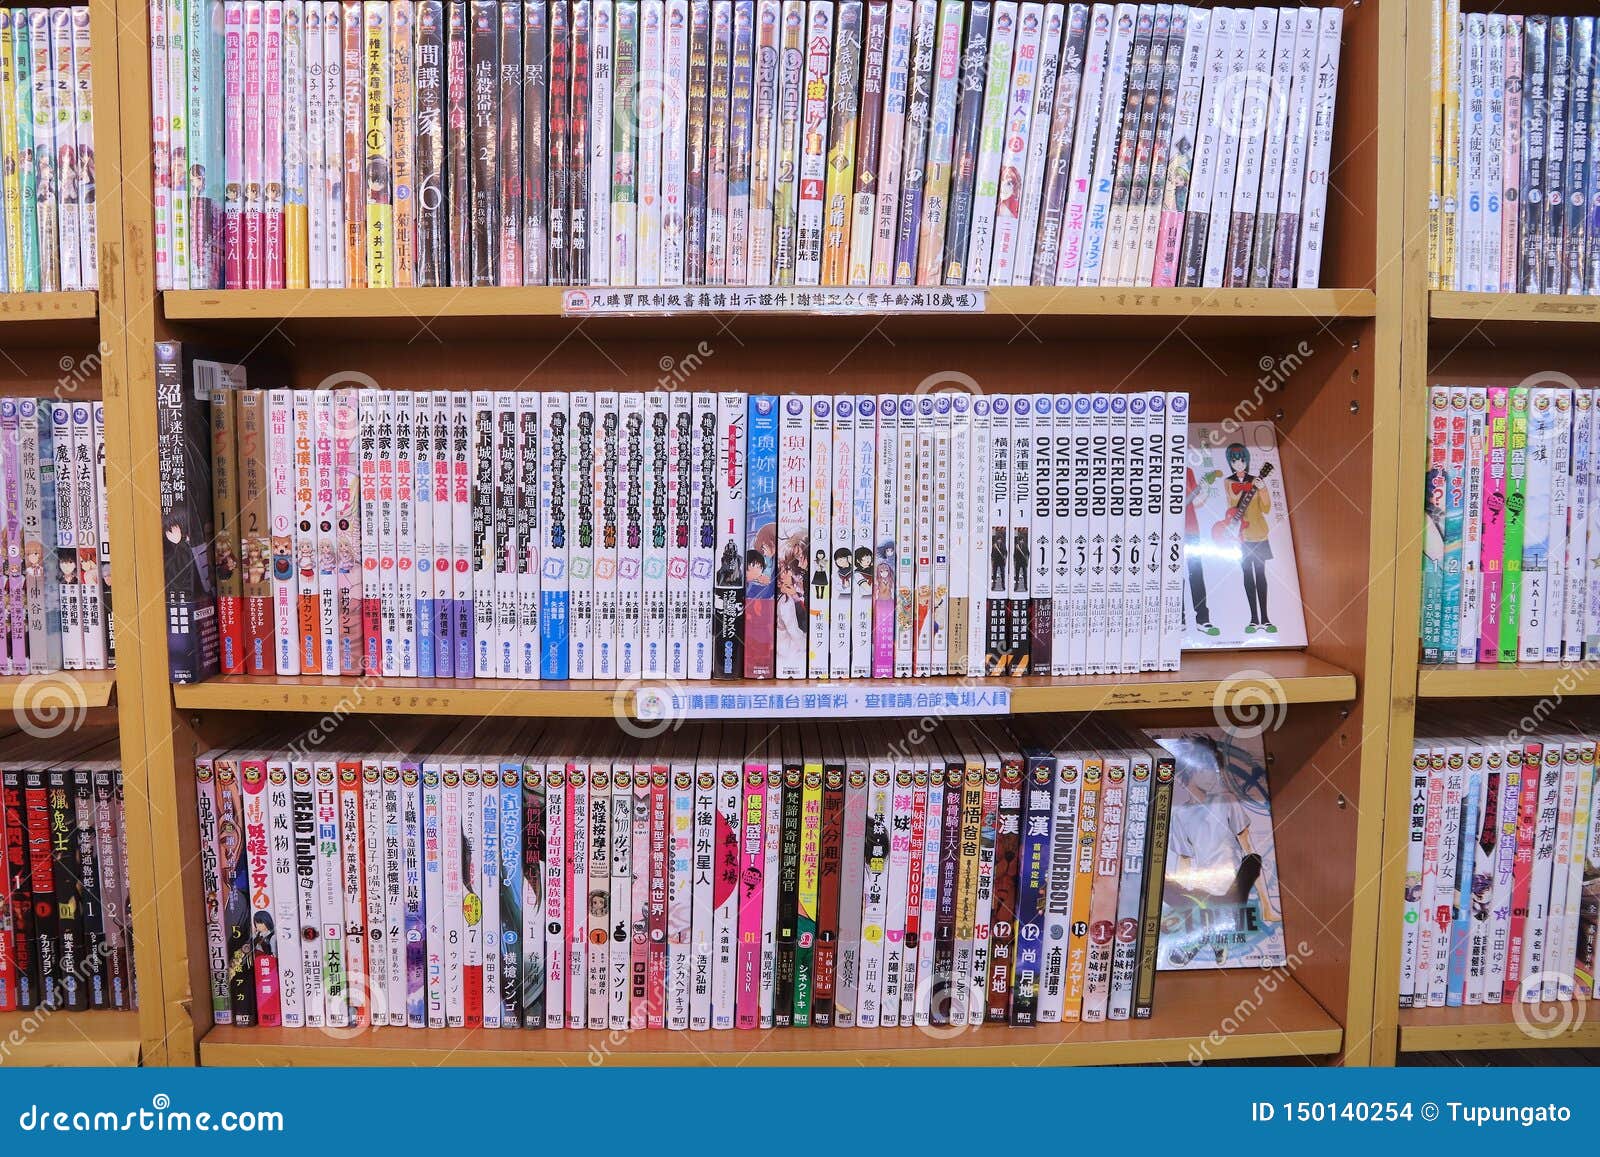 6 novos animes baseados em mangas - Bandas Desenhadas